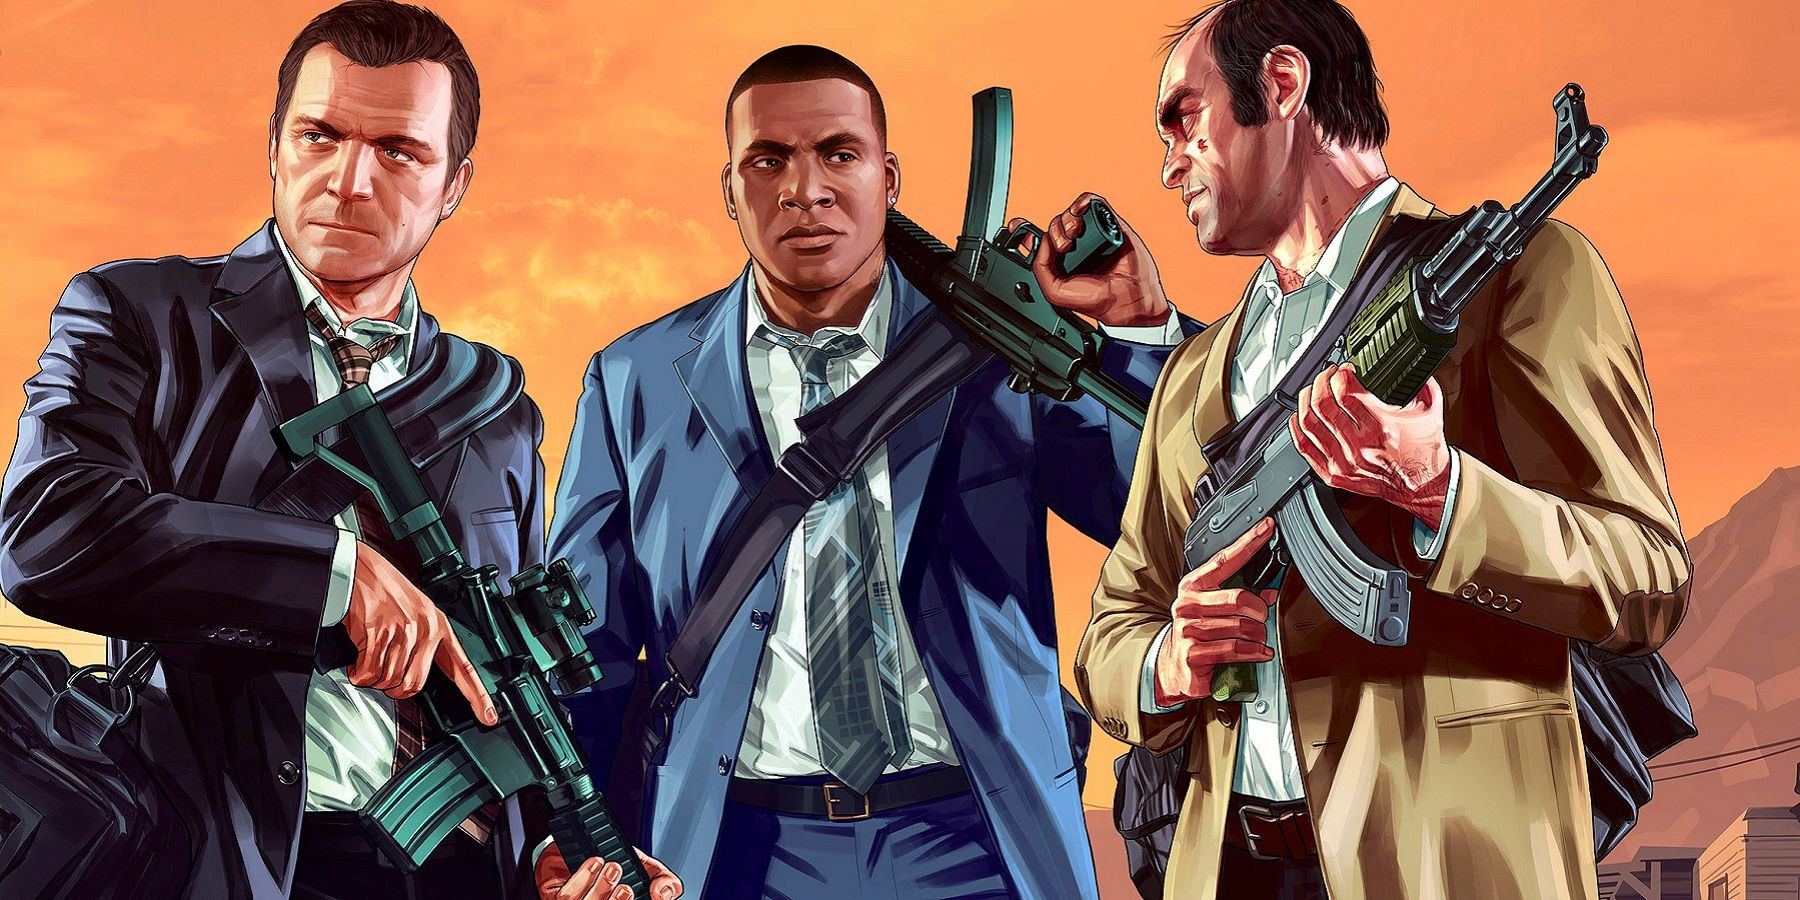 Úgy tűnik, hogy a Rockstar búcsút mond a Grand Theft Auto 5 -ről